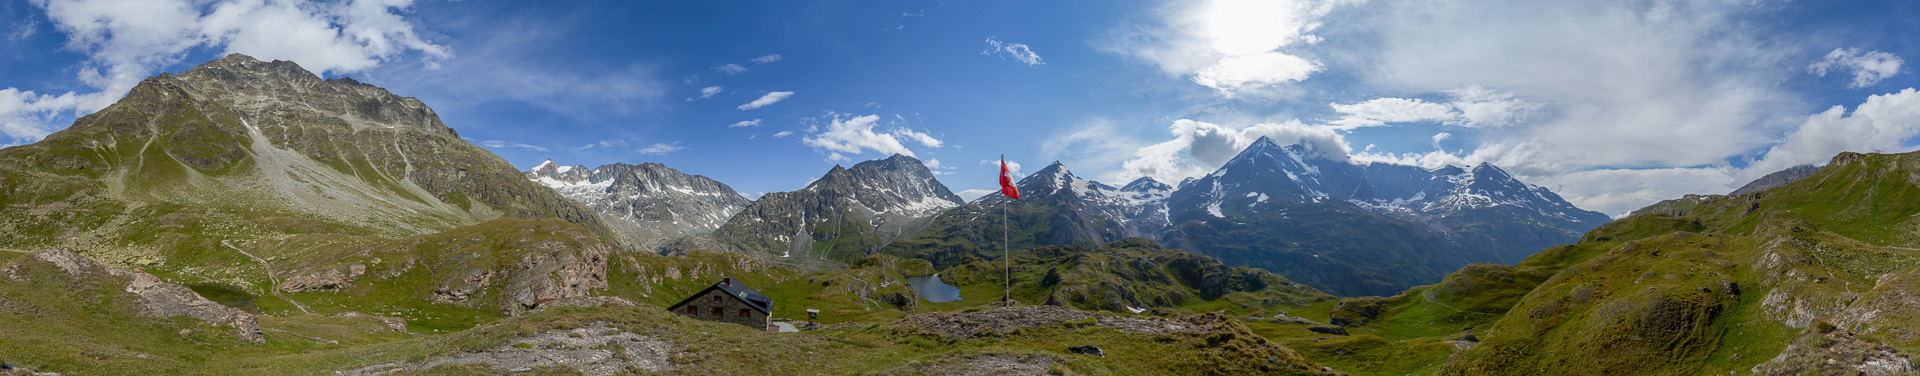 Hüttenpanorama mit Pointe d'Otemma, Mont Gelé und Mont Avril